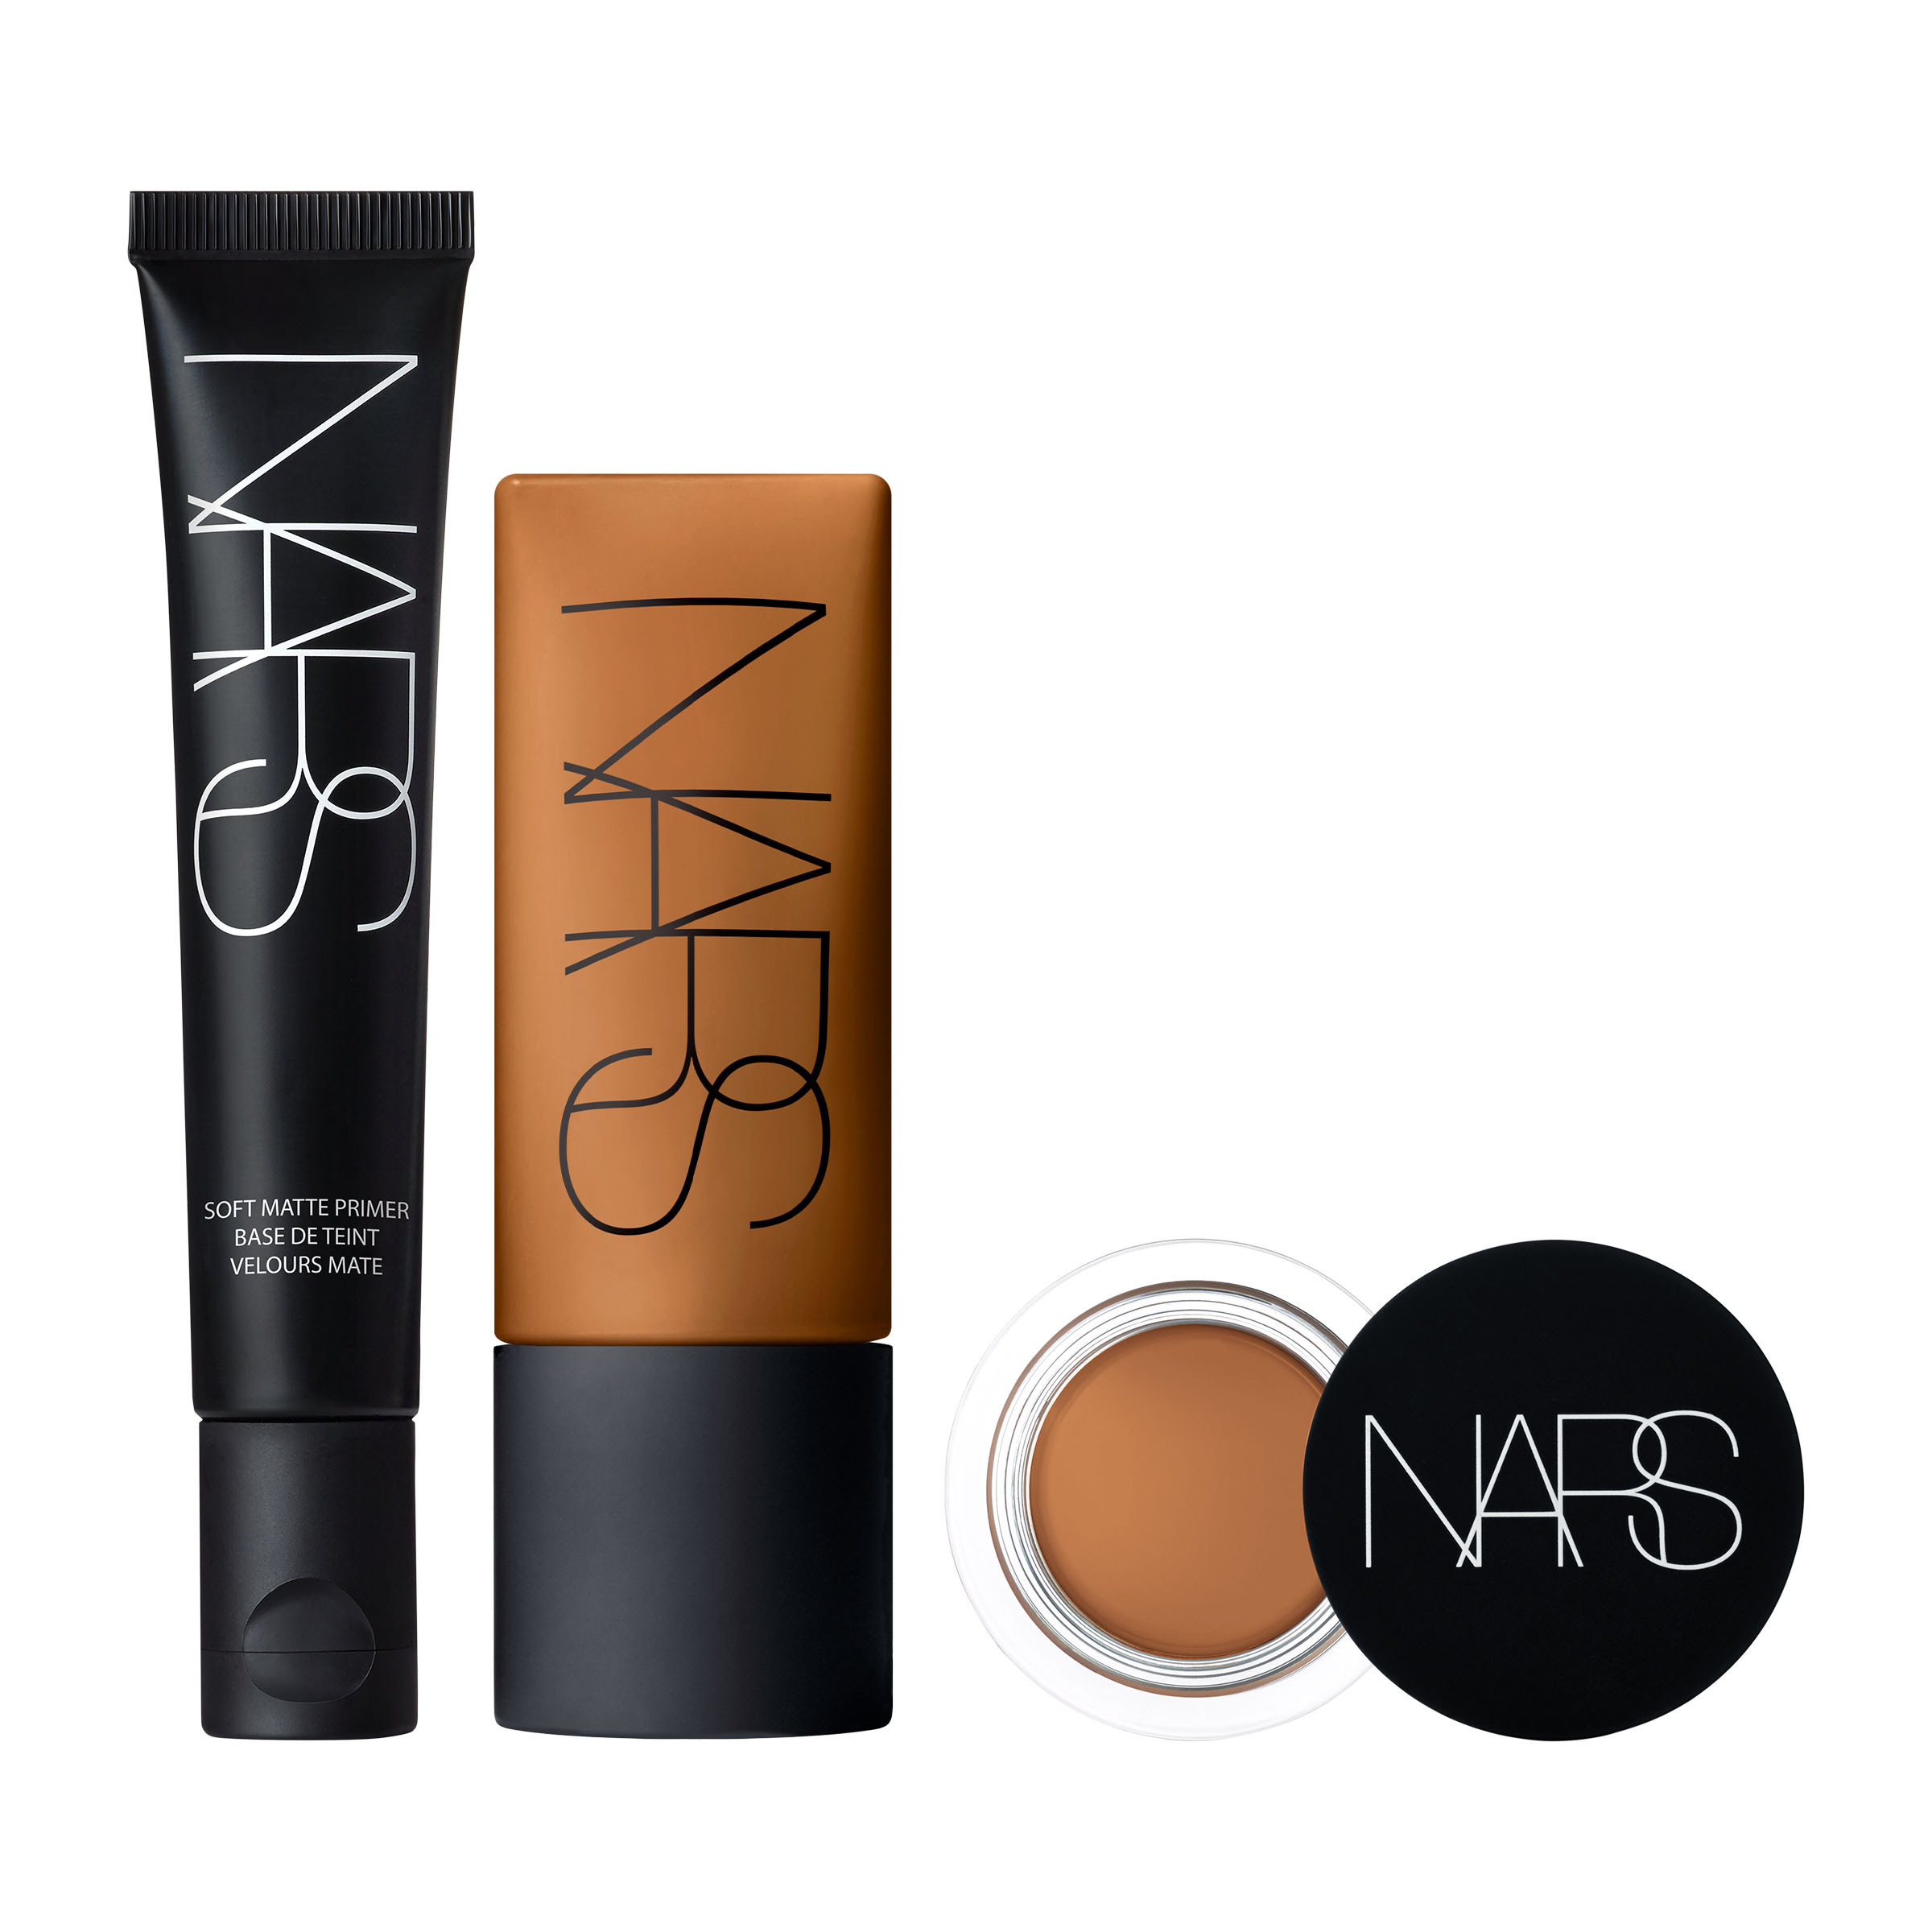 Soft Matte Primer, Concealer & Foundation Bundle | NARS Cosmetics